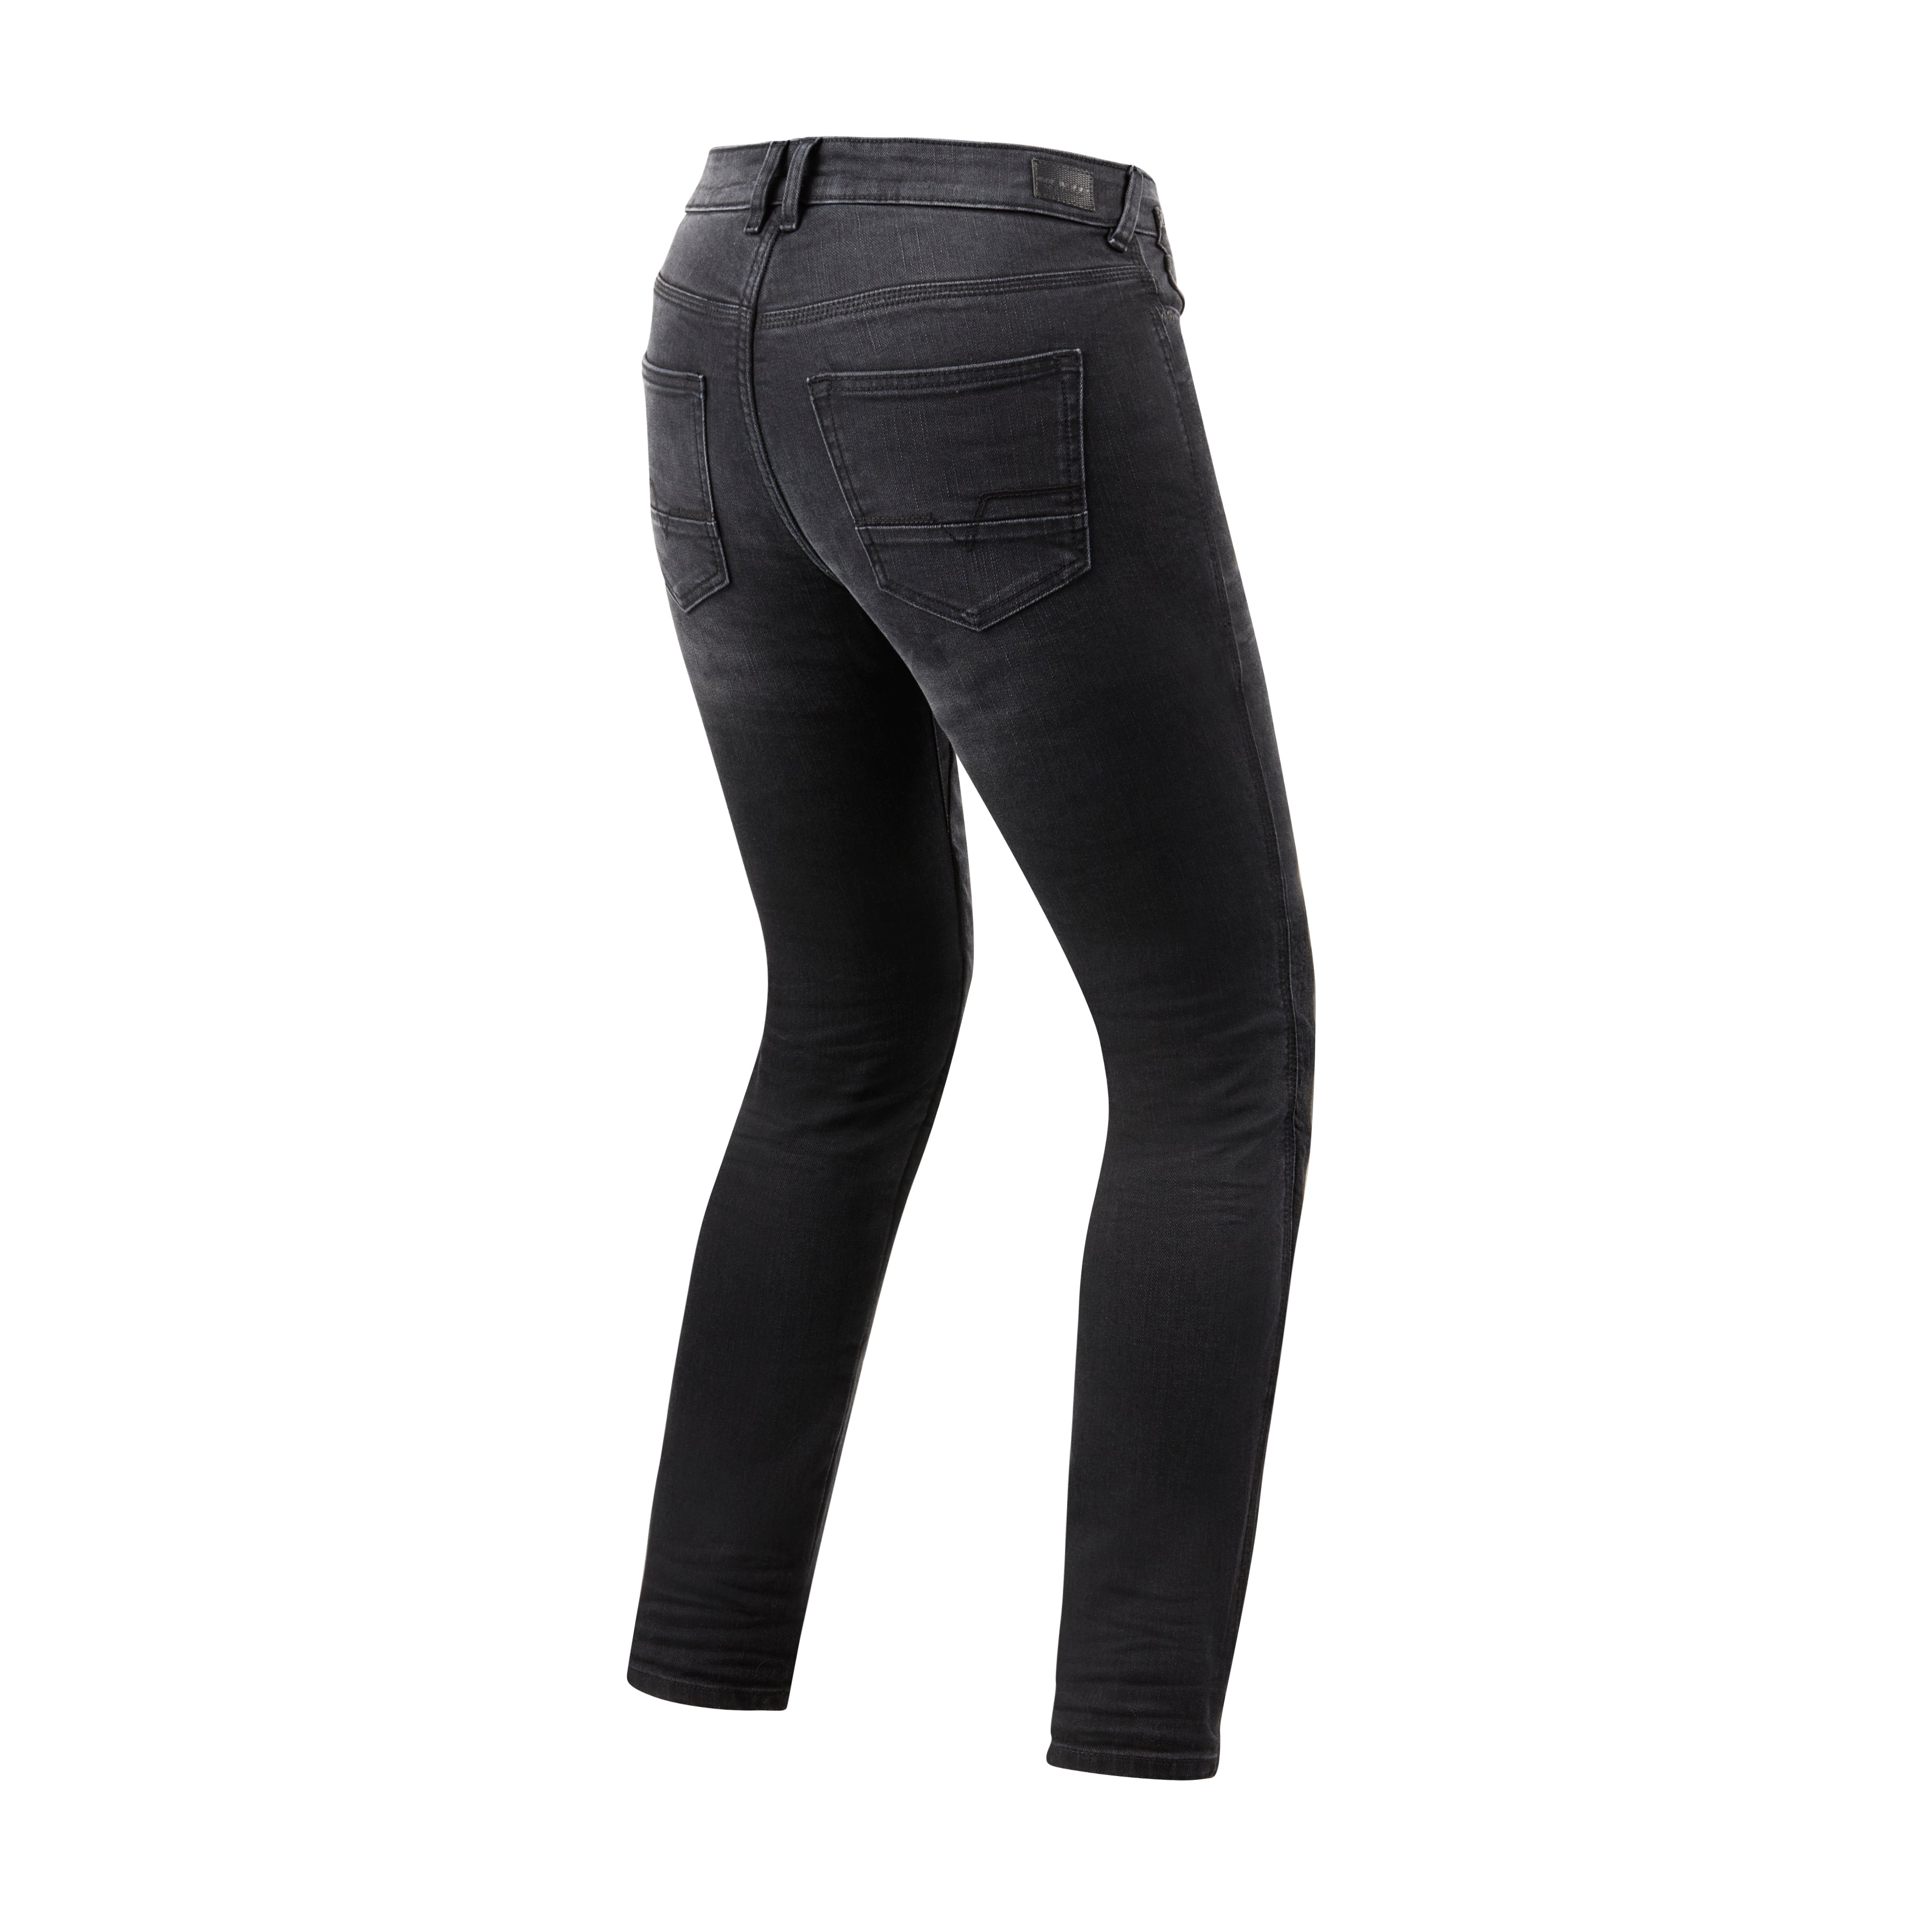 G STAR Slim fit Black Denim Jeans Size W29 L32